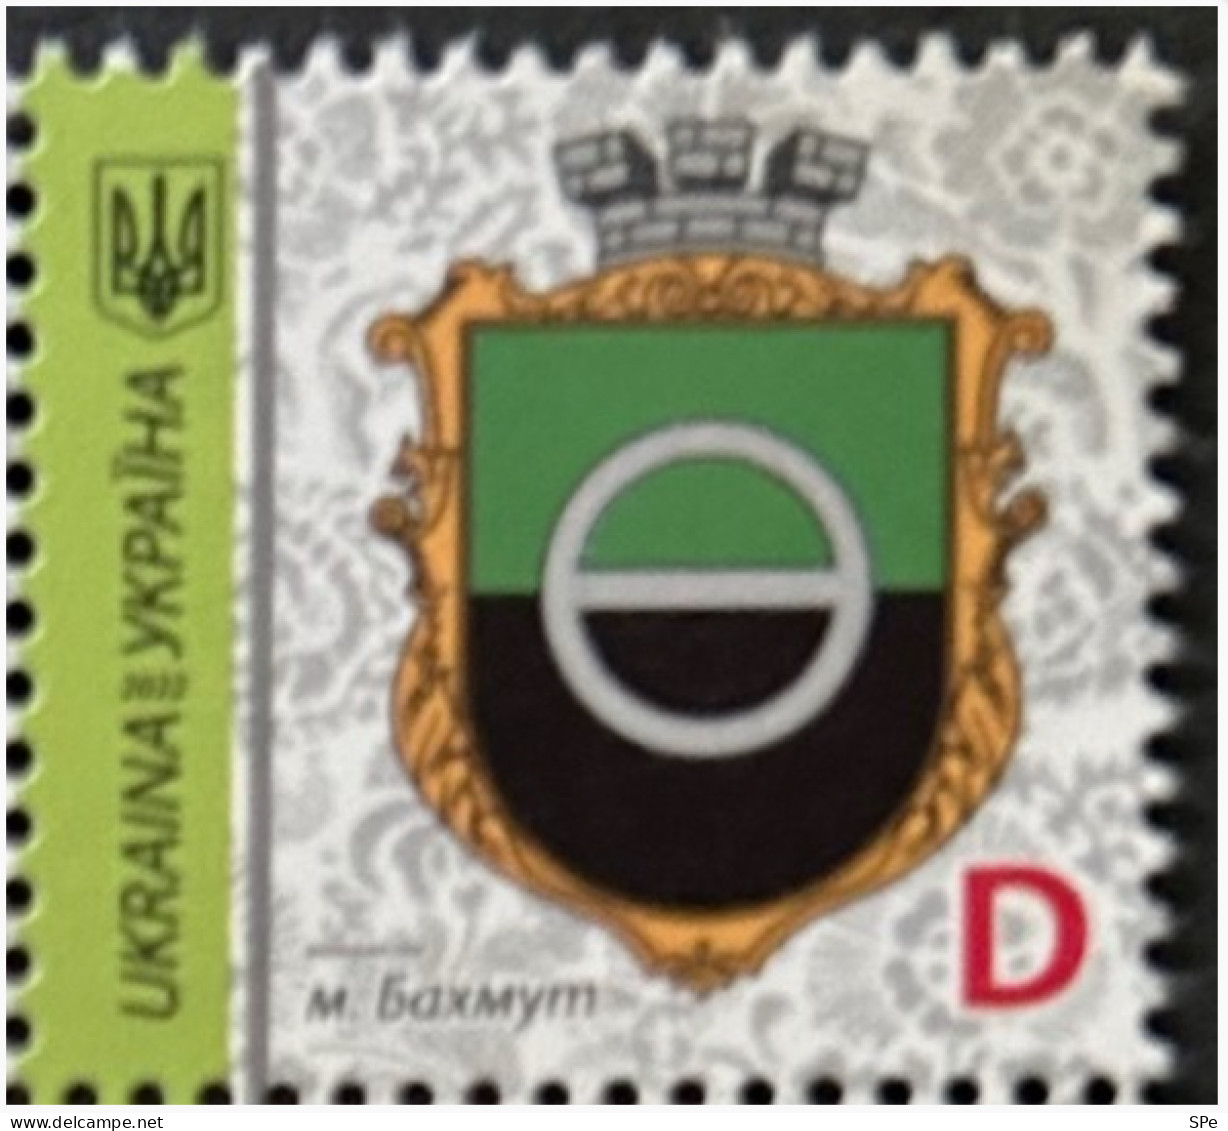 Ukraine 2022 Bahmut Definitives Town Coat Of Arms Stamp MNH - Ukraine